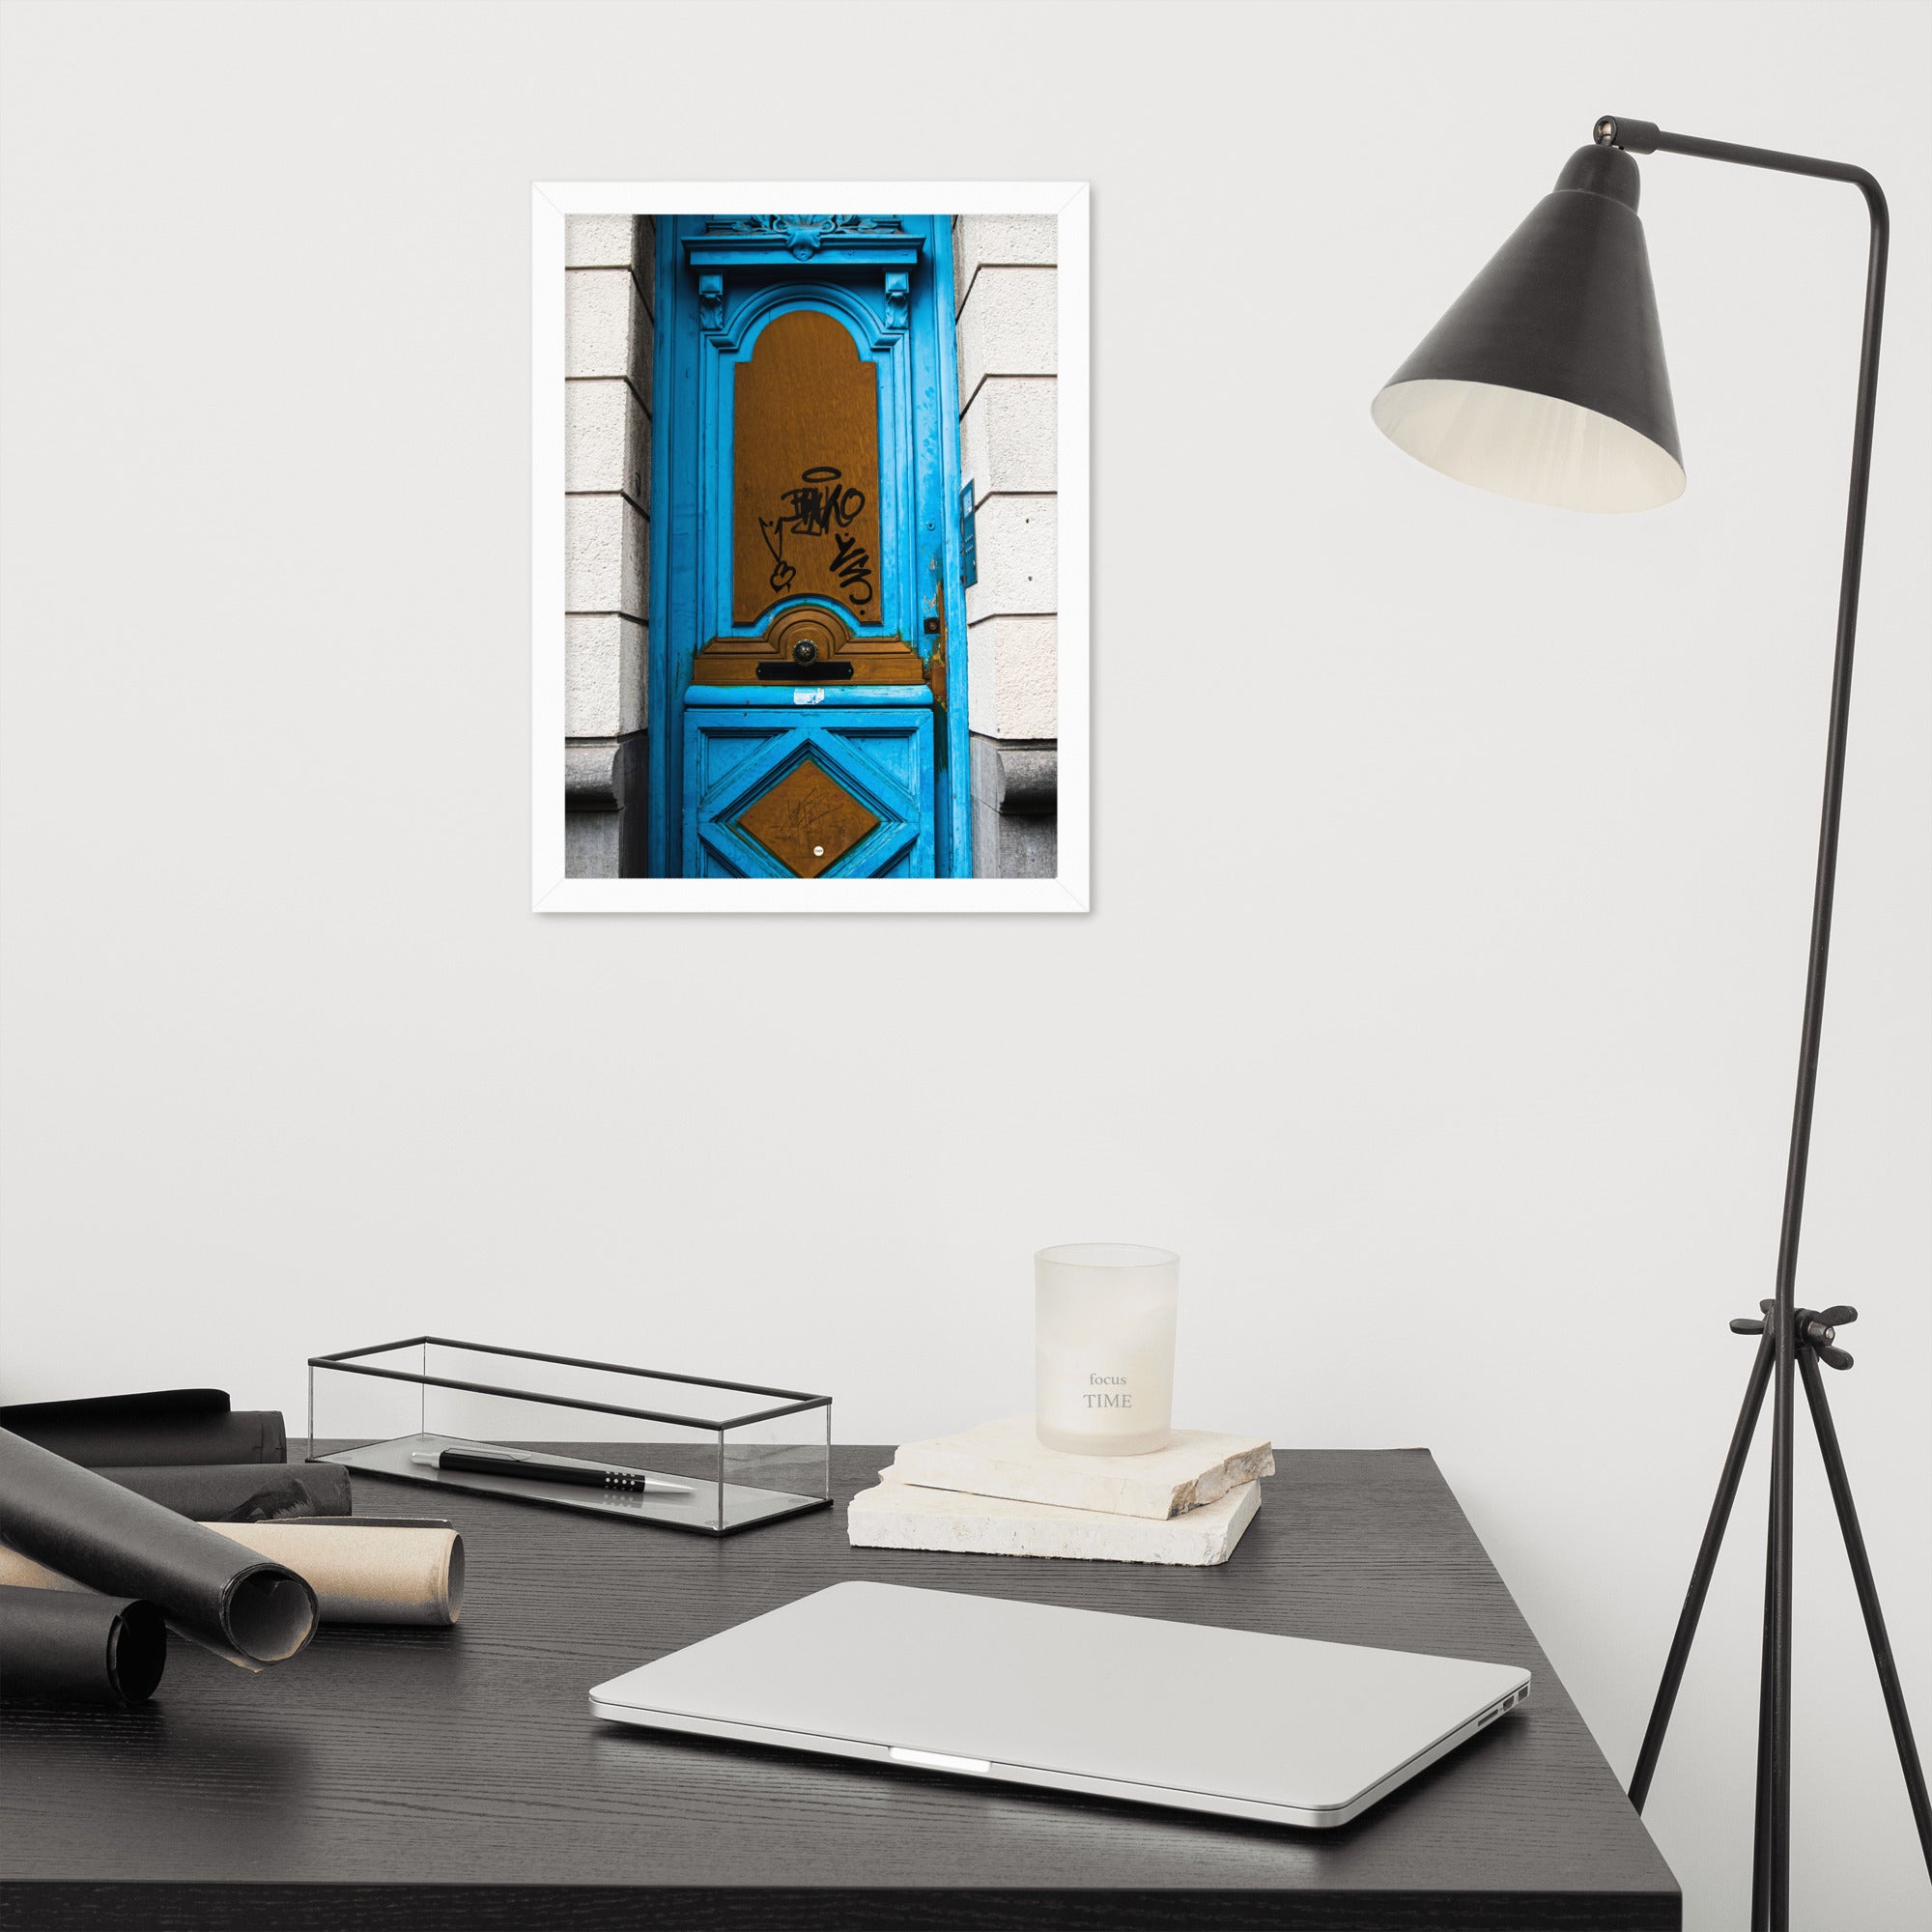 Photographie d'une élégante porte bleue, imprimée avec une précision muséale, capturant le mystère et l'intrigue de ce qui pourrait se trouver derrière elle.